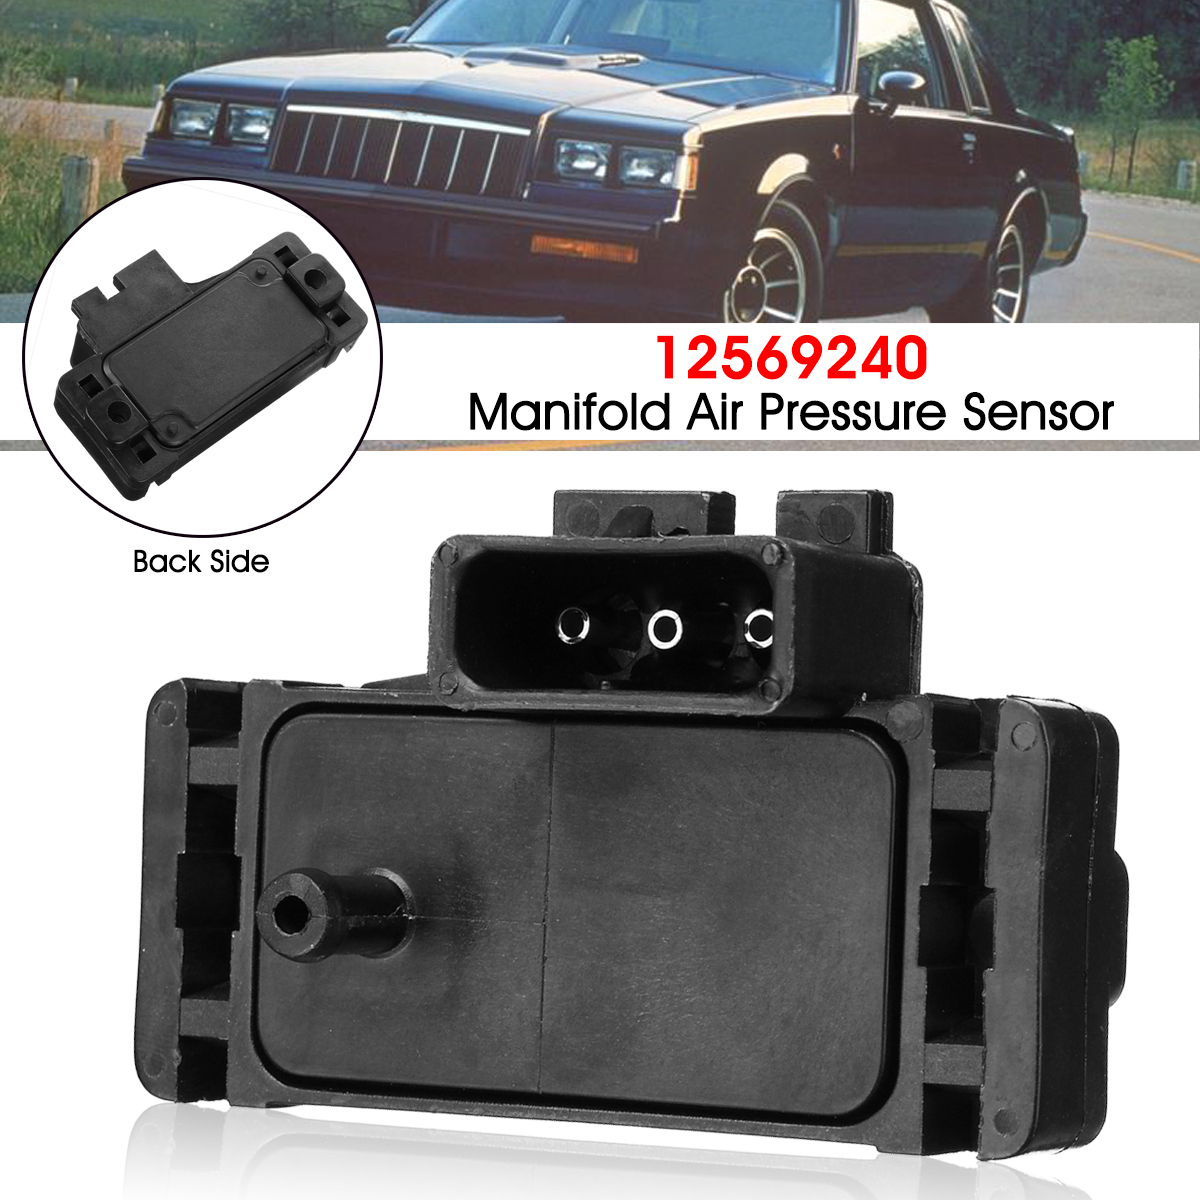 Manifold-Air-Pressure-Sensor-MAP-For-Multi-Model-Universal-Car-1383684